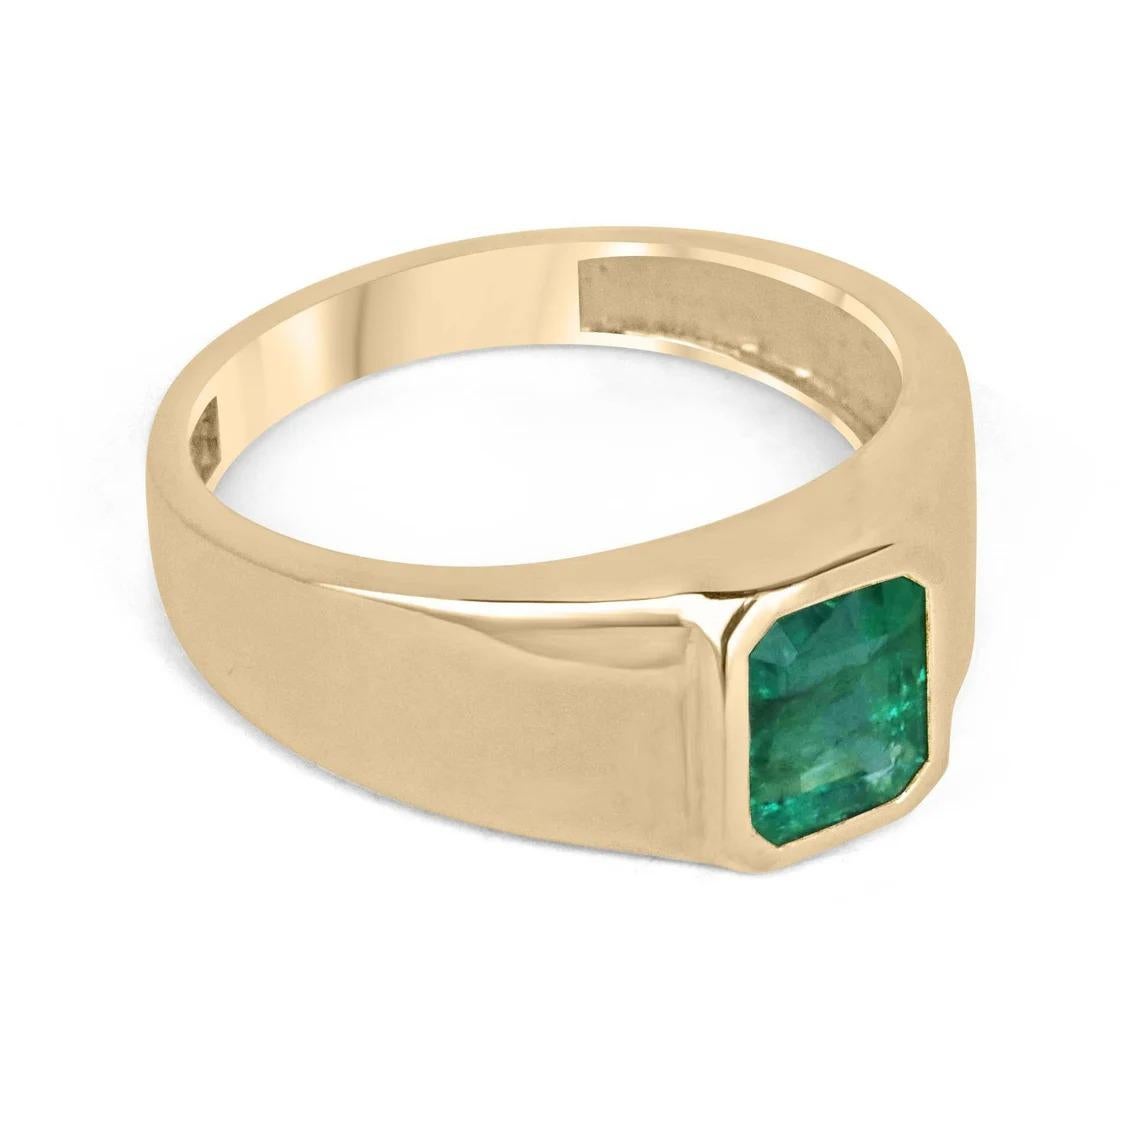 Wir präsentieren einen eleganten Smaragd-Solitär-Goldring für Herren mit einem bemerkenswerten Smaragd von 2,65 Karat und hervorragender Qualität. Der Smaragd mit seiner satten dunkelgrünen Farbe, halbtransparenter Klarheit und sehr gutem Glanz